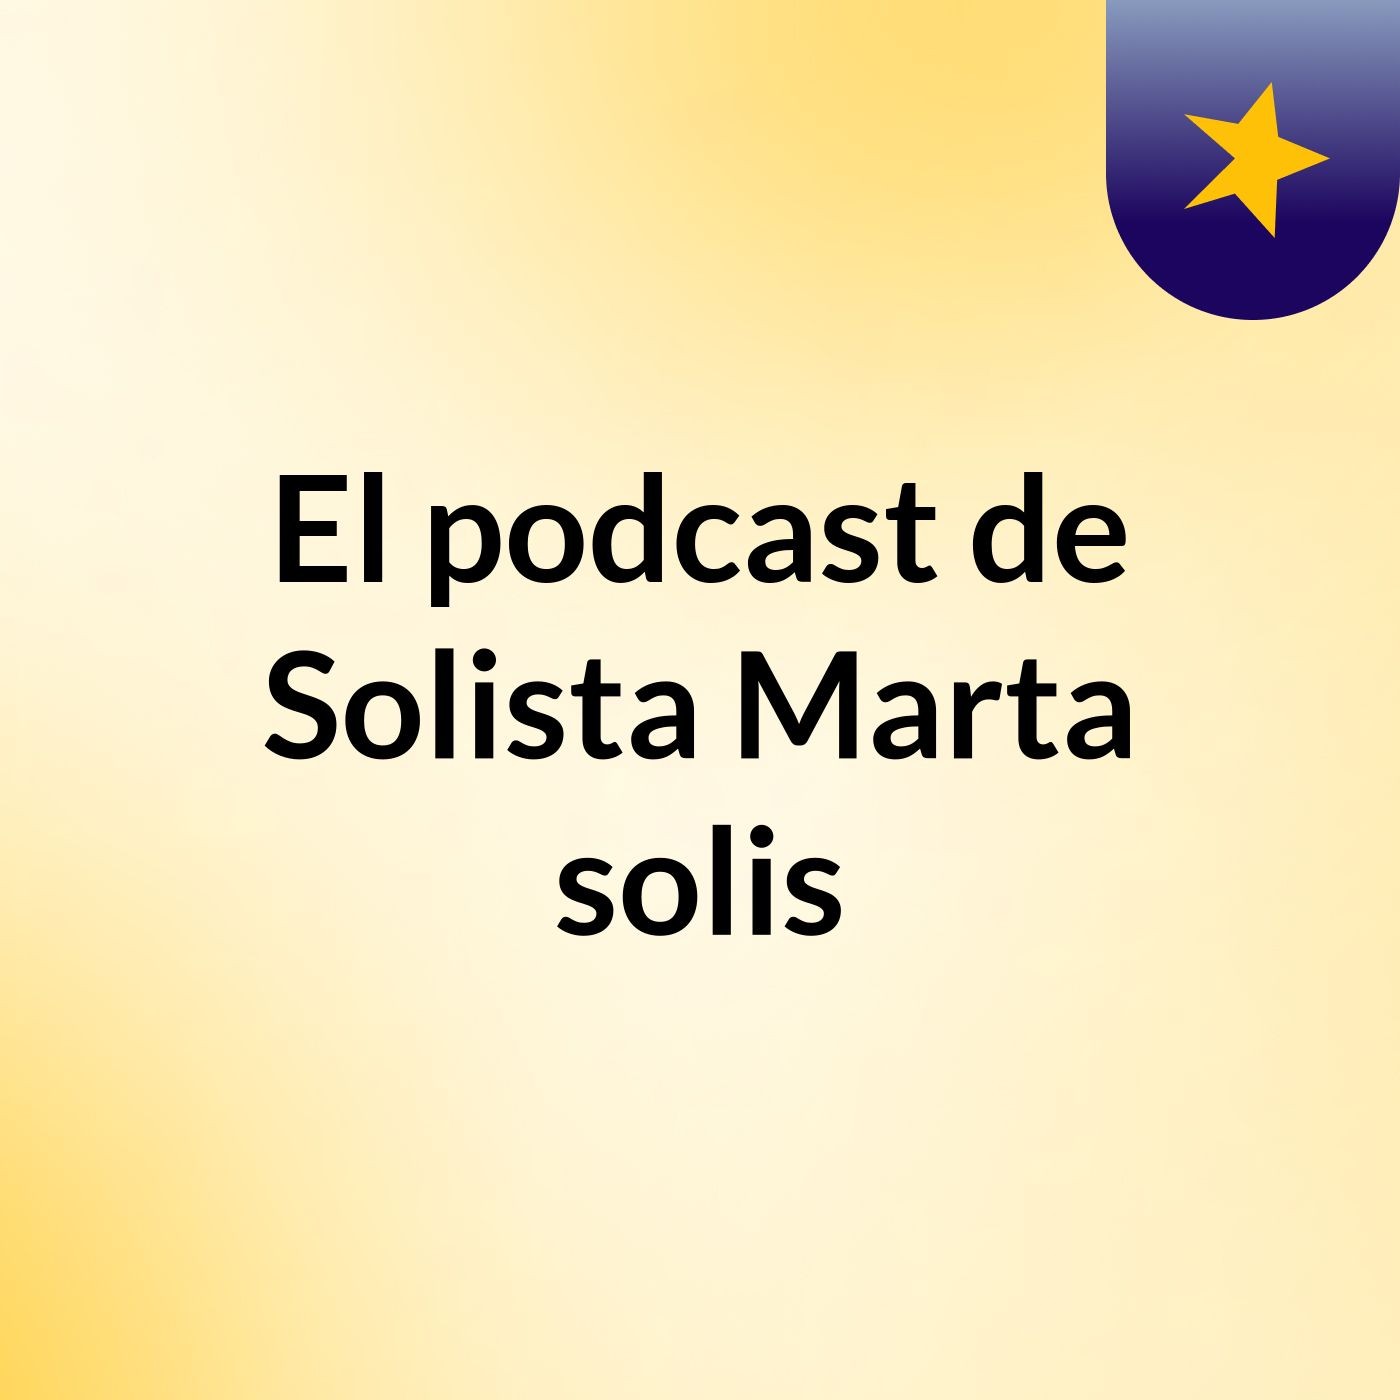 El podcast de Solista Marta solis